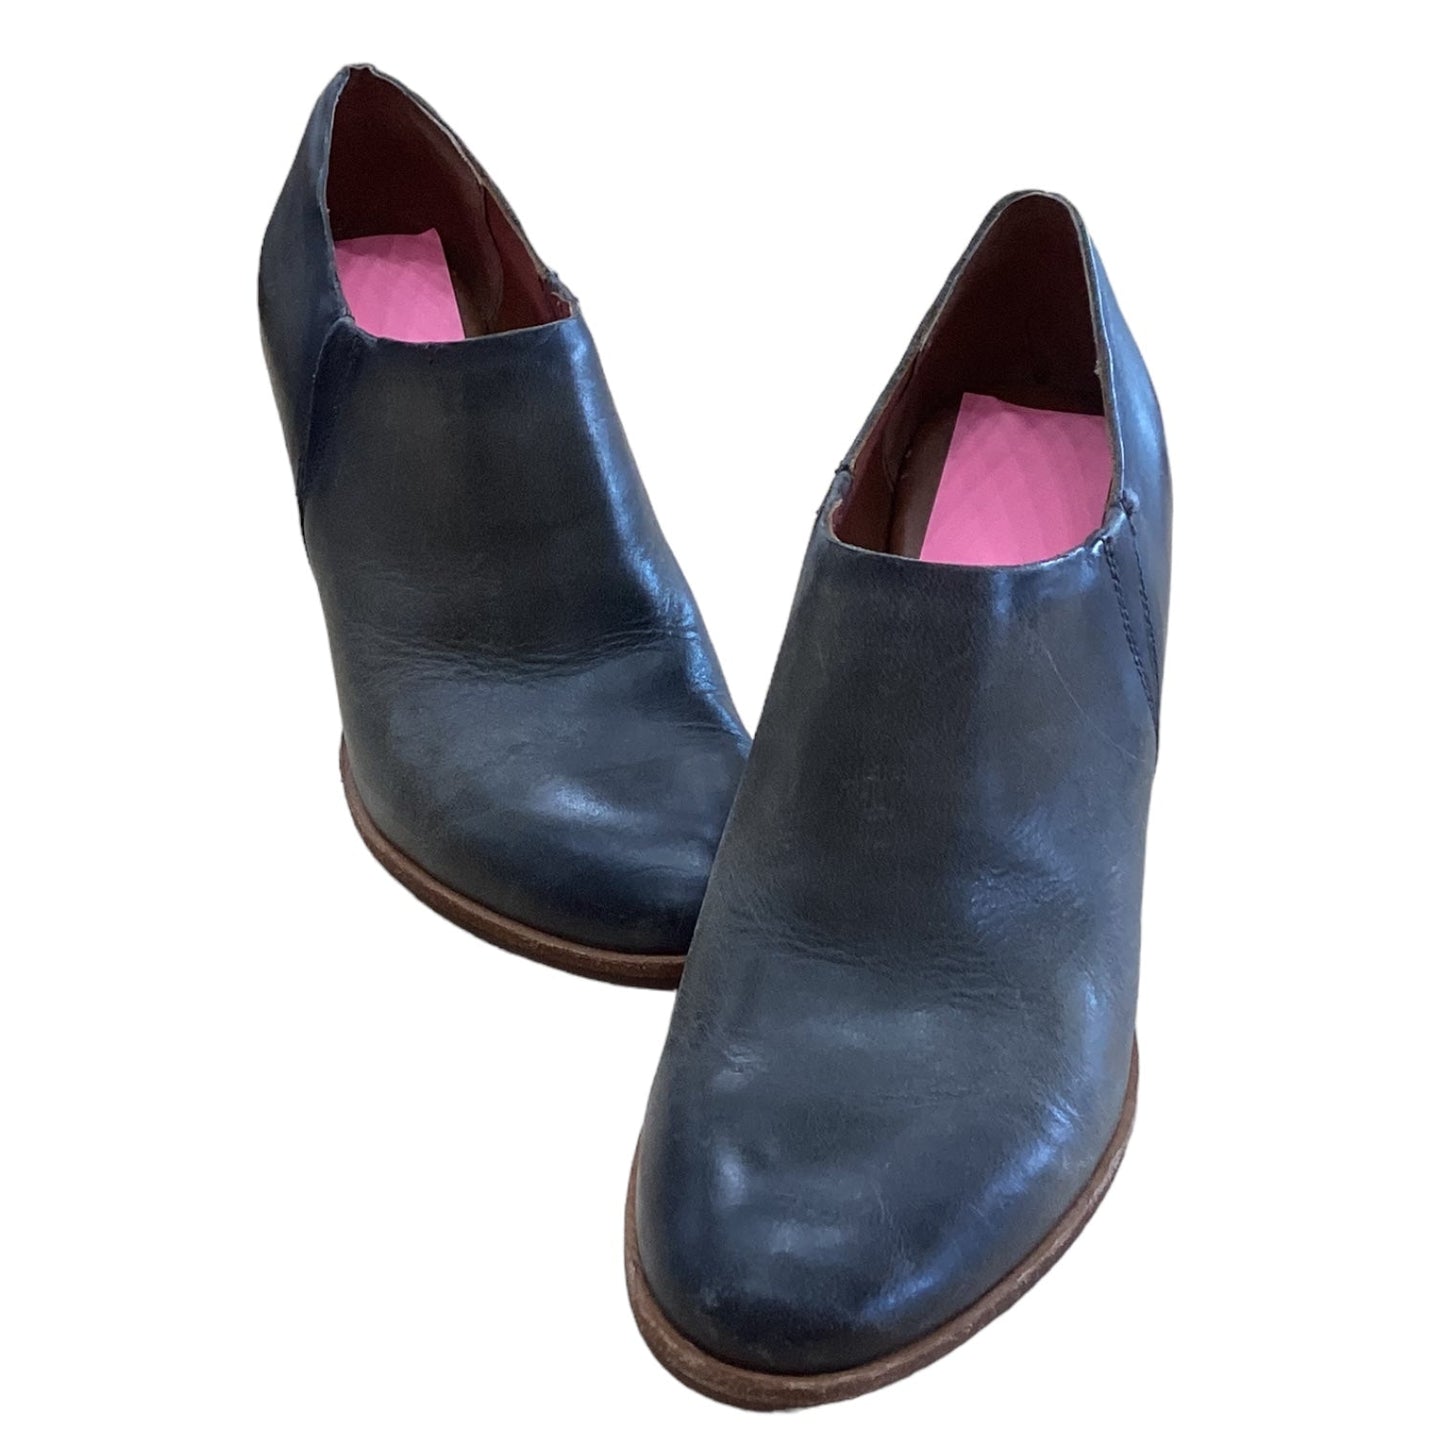 Grey Shoes Designer Kork Ease, Size 7.5